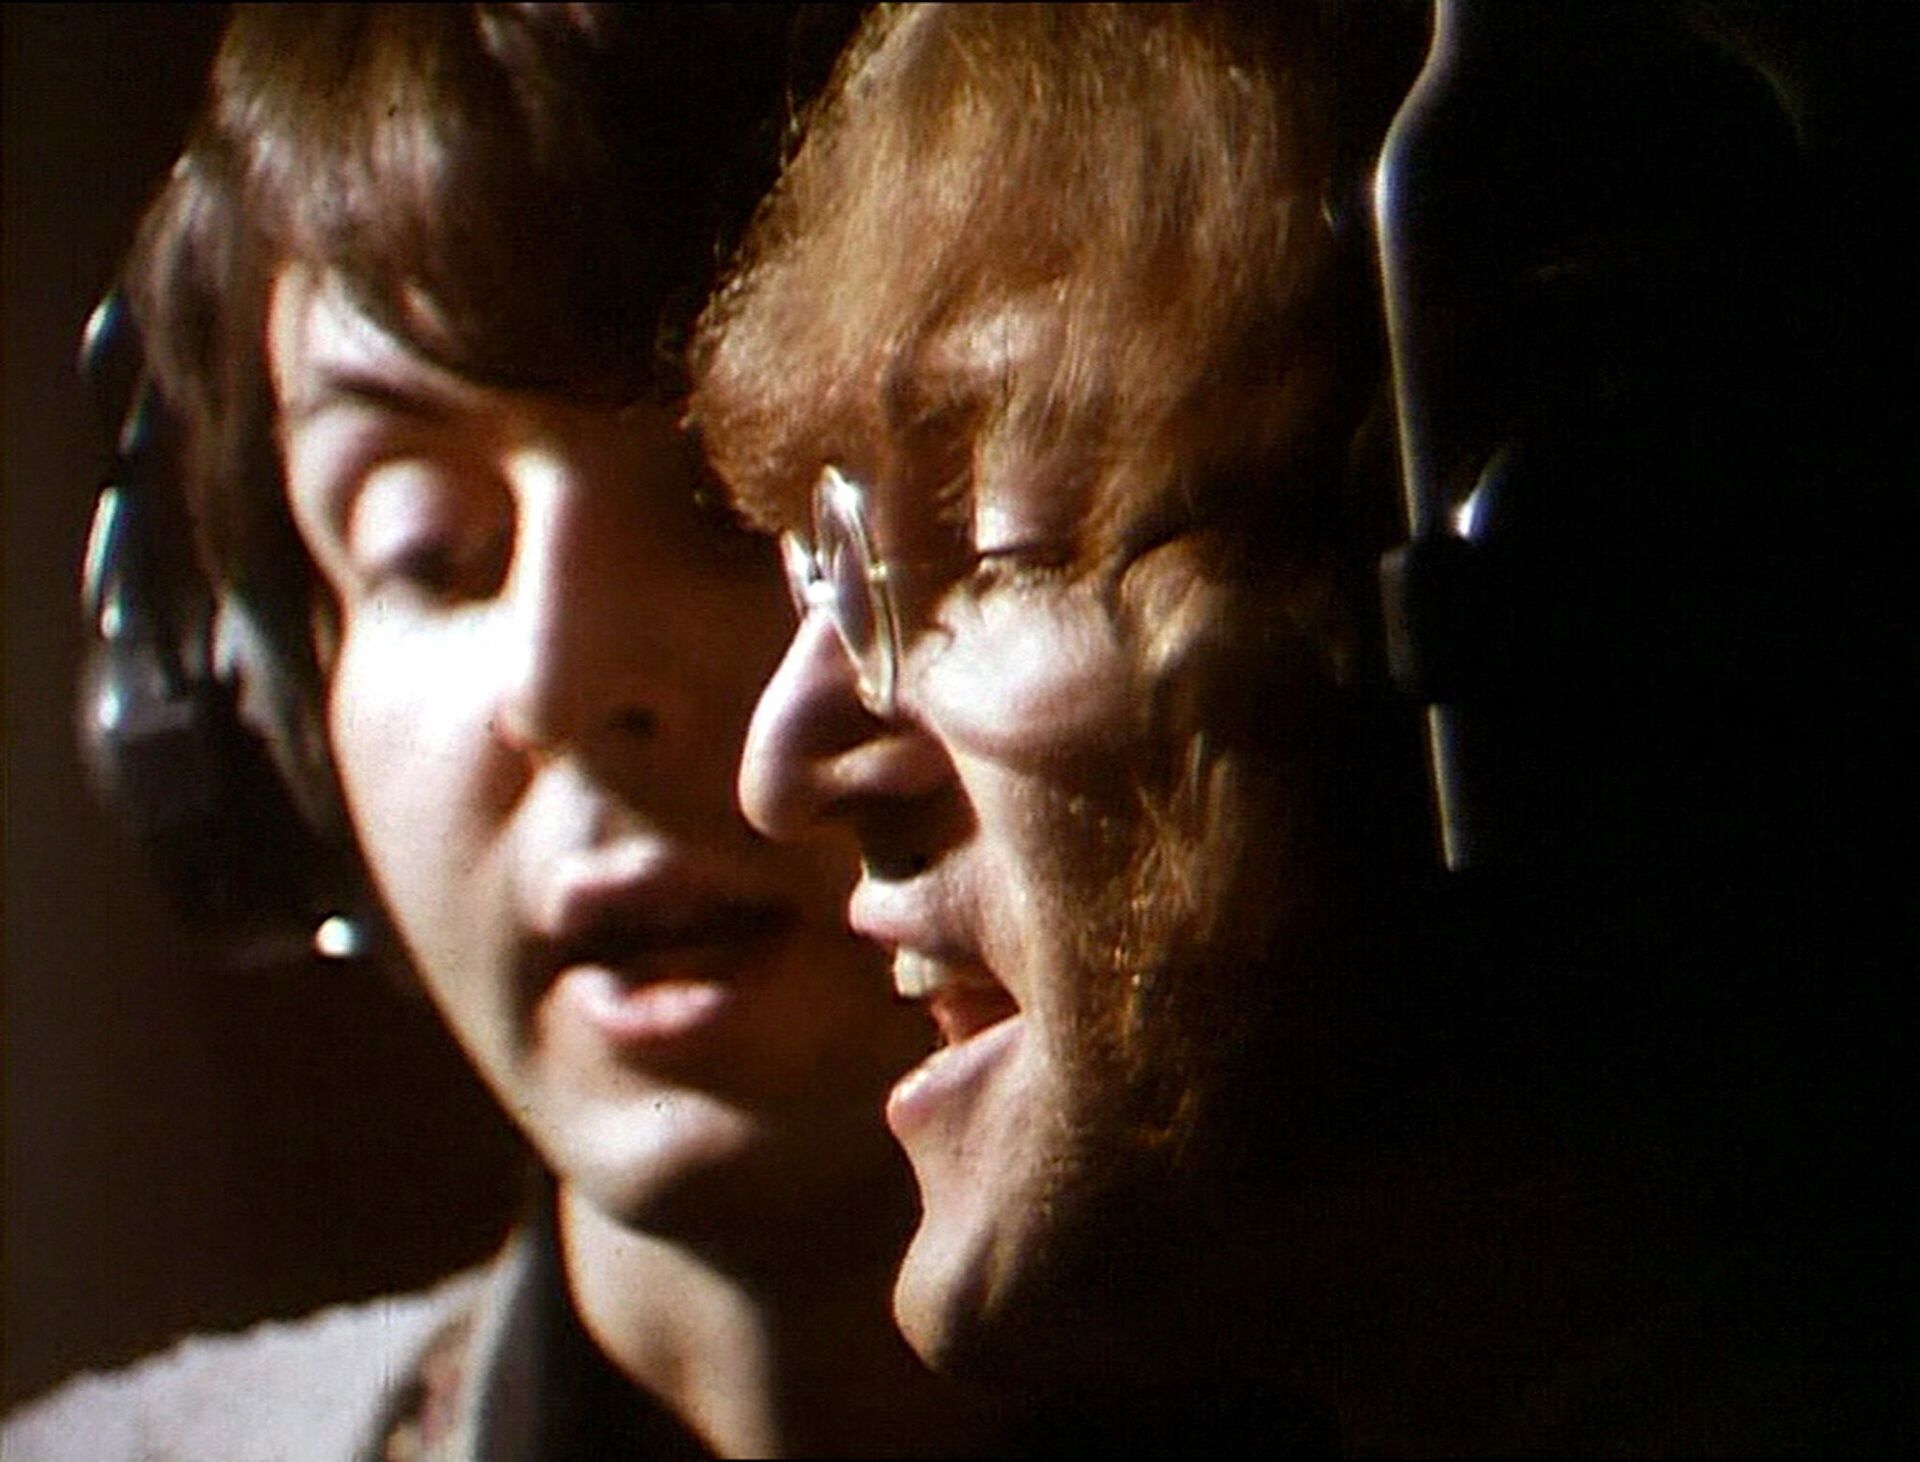 Джон Леннон и Пол Маккартни во время звукозаписи. Abbey Road Studios, Лондон. 1968 год - РИА Новости, 1920, 08.10.2020